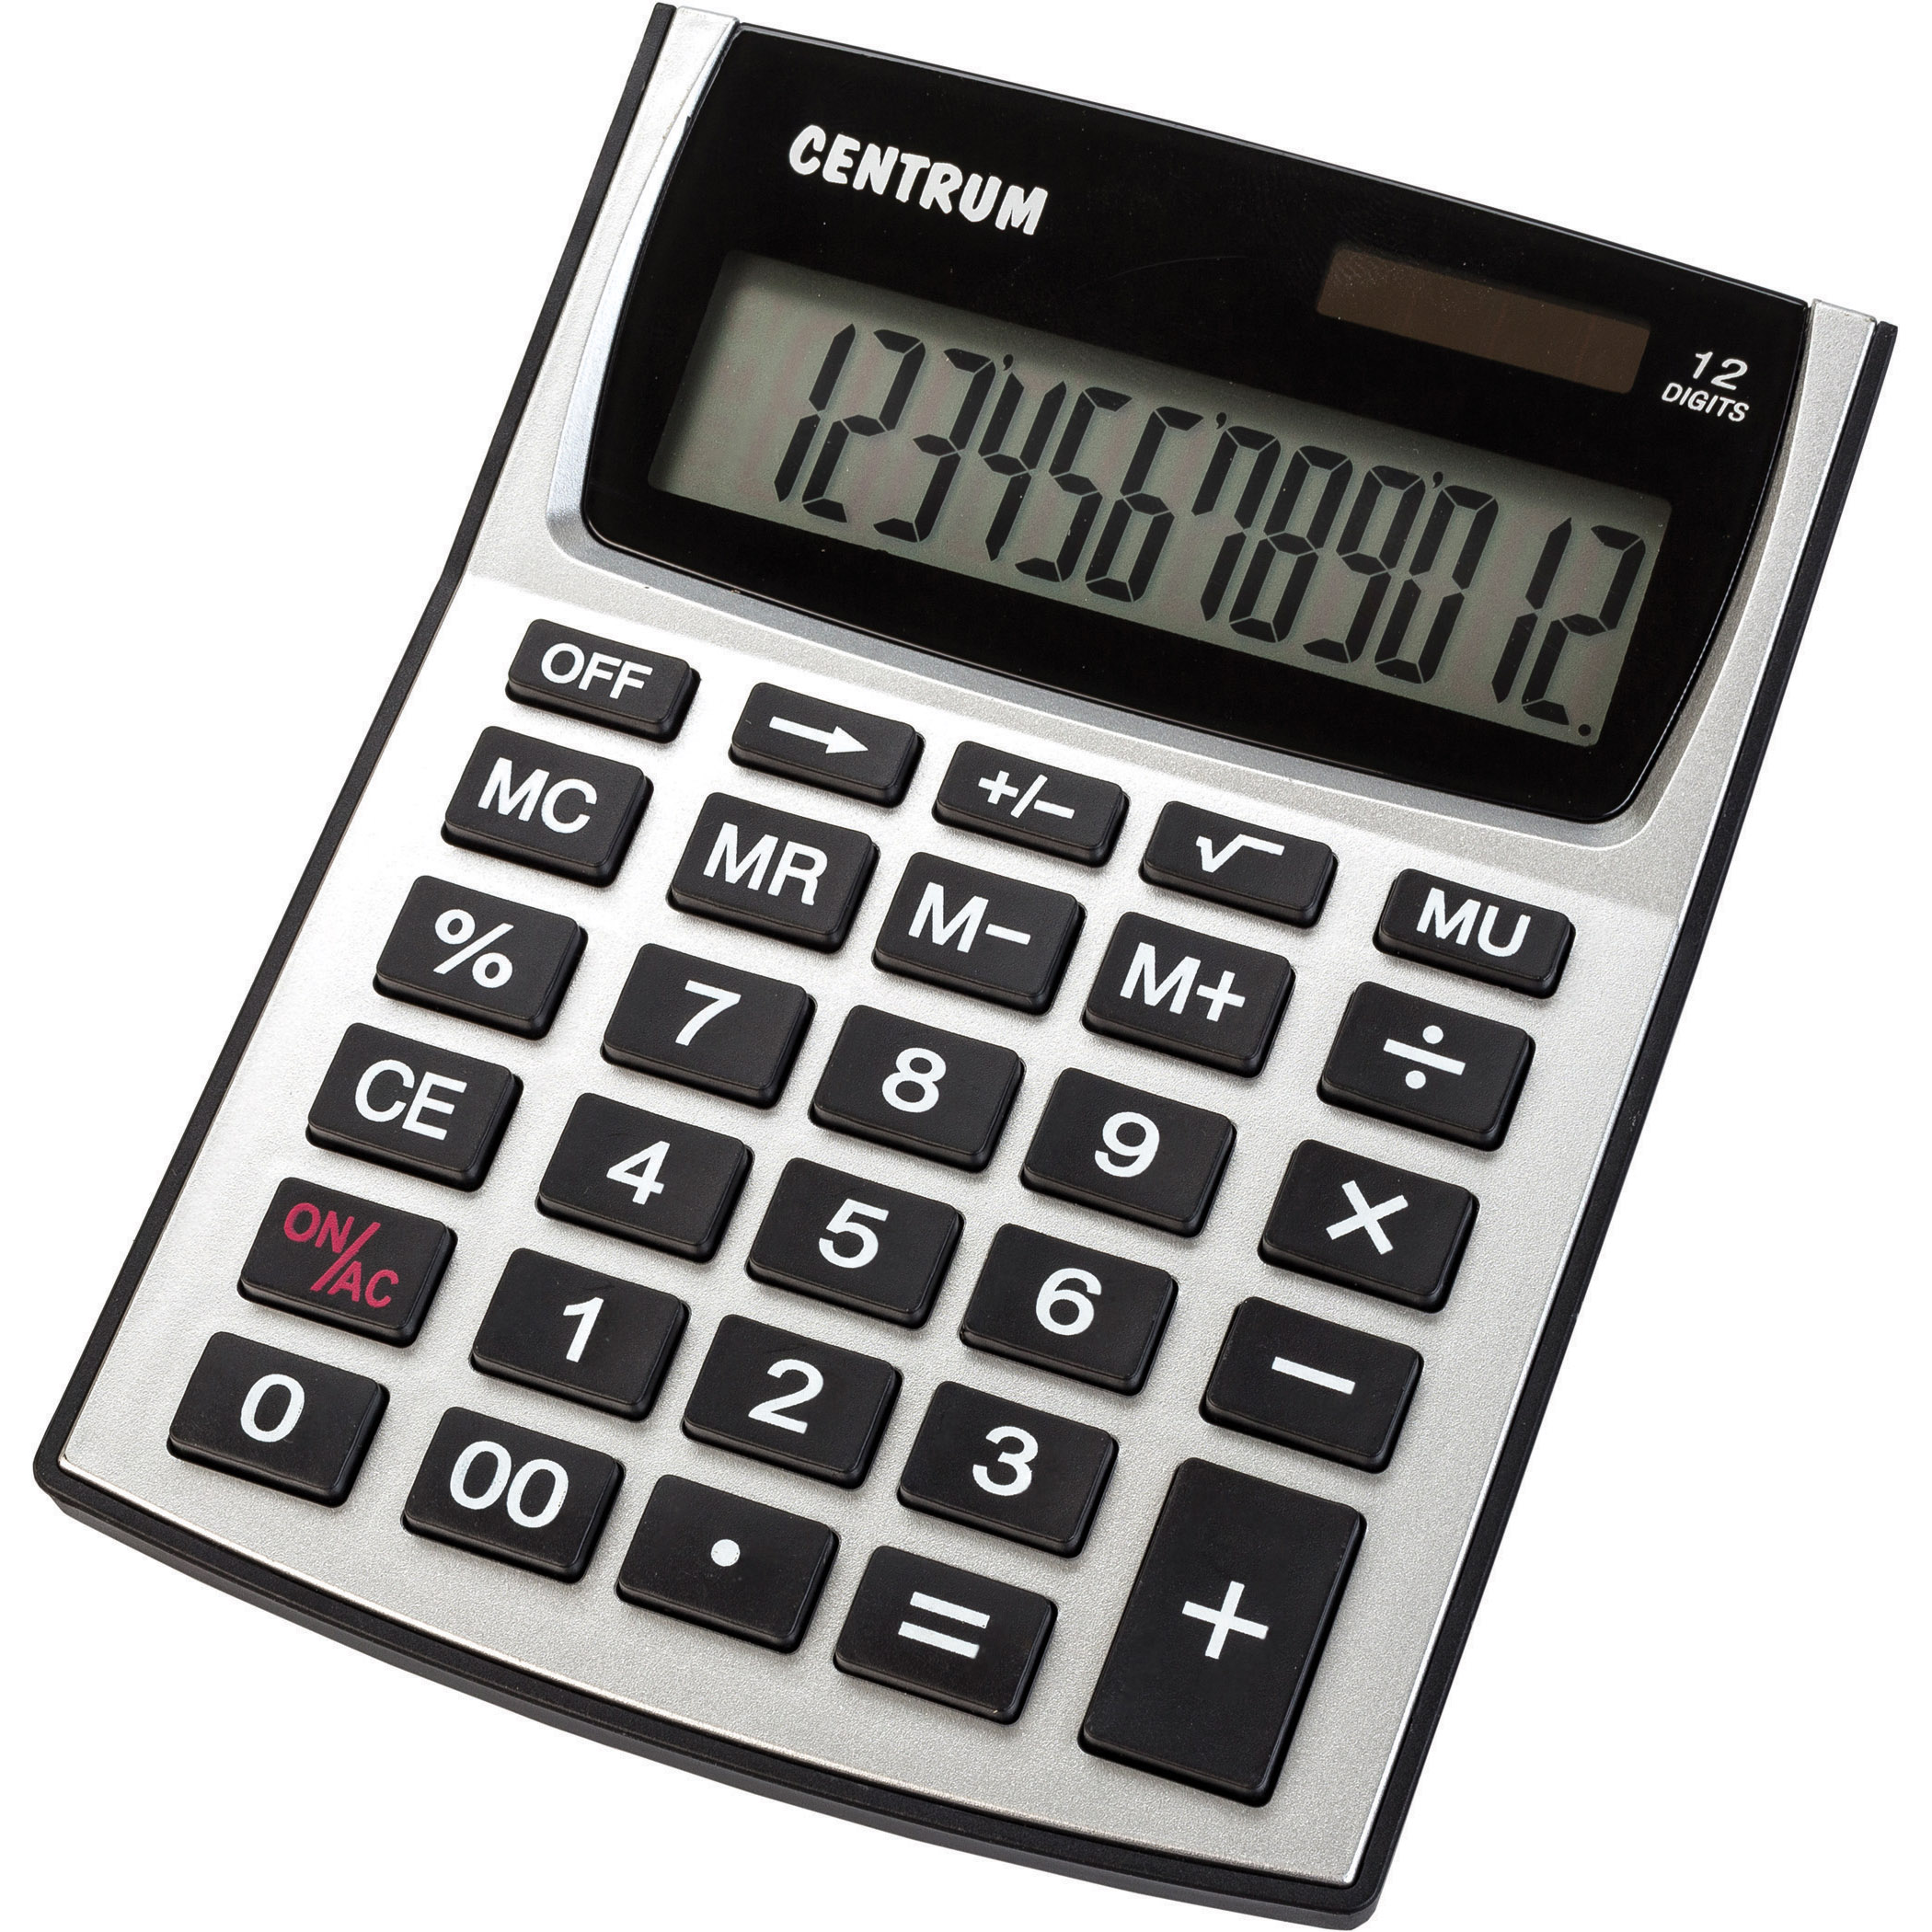 В 1 мм калькулятор. Калькулятор cdb1601bk Citizen черный 16-разр. Калькулятор Centrum. Калькулятор настольный 16-разрядный.